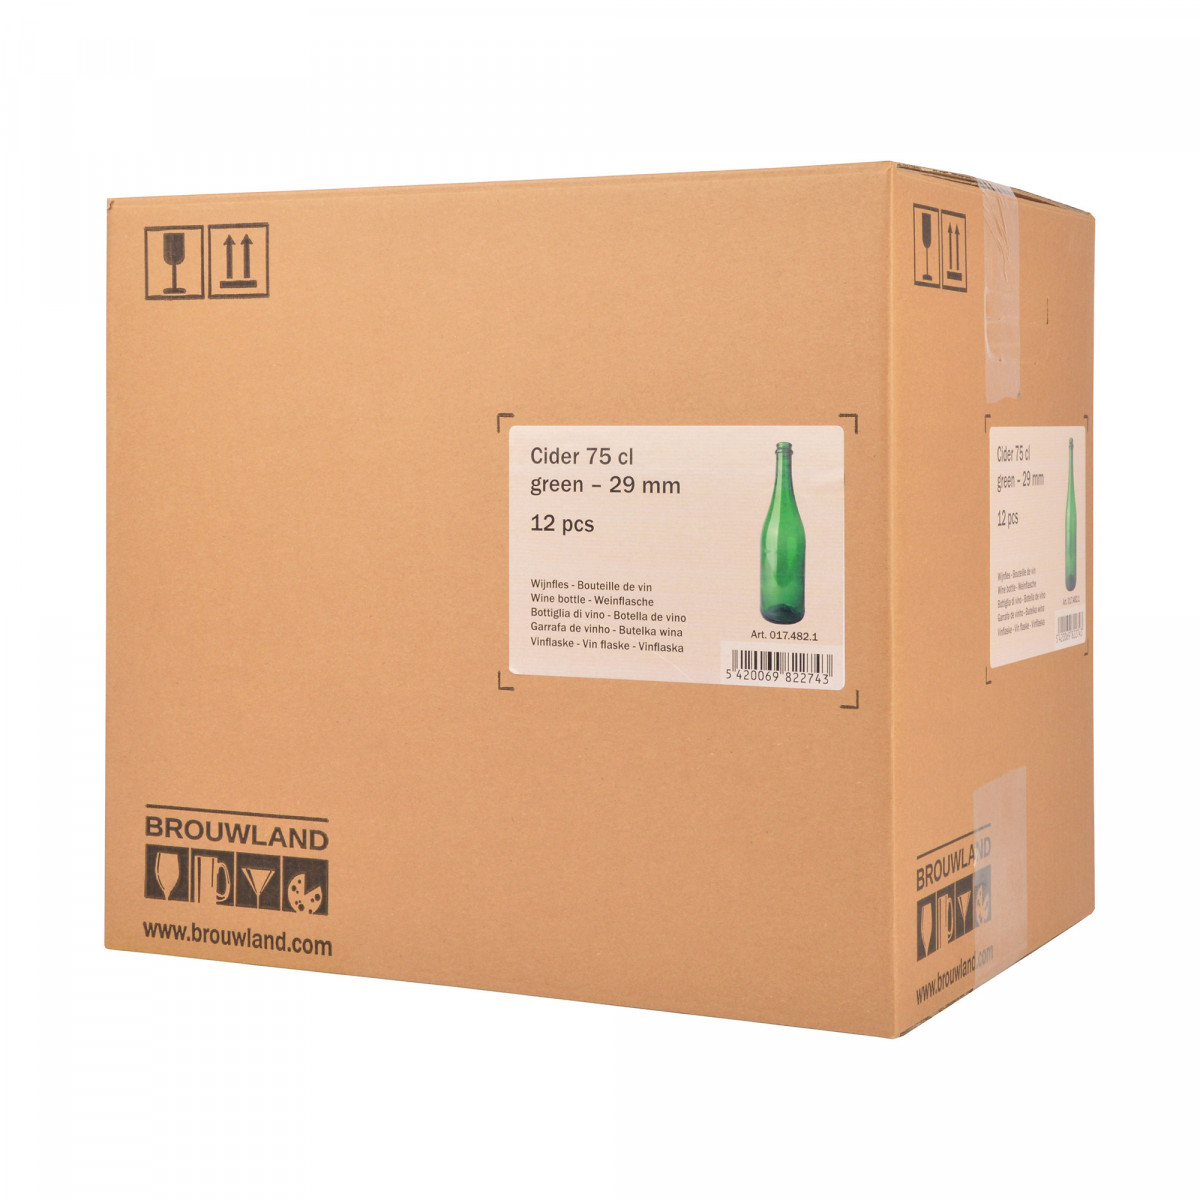 Wijnfles cider 75 cl, 560 g, groen, 29 mm, doos 12 st.